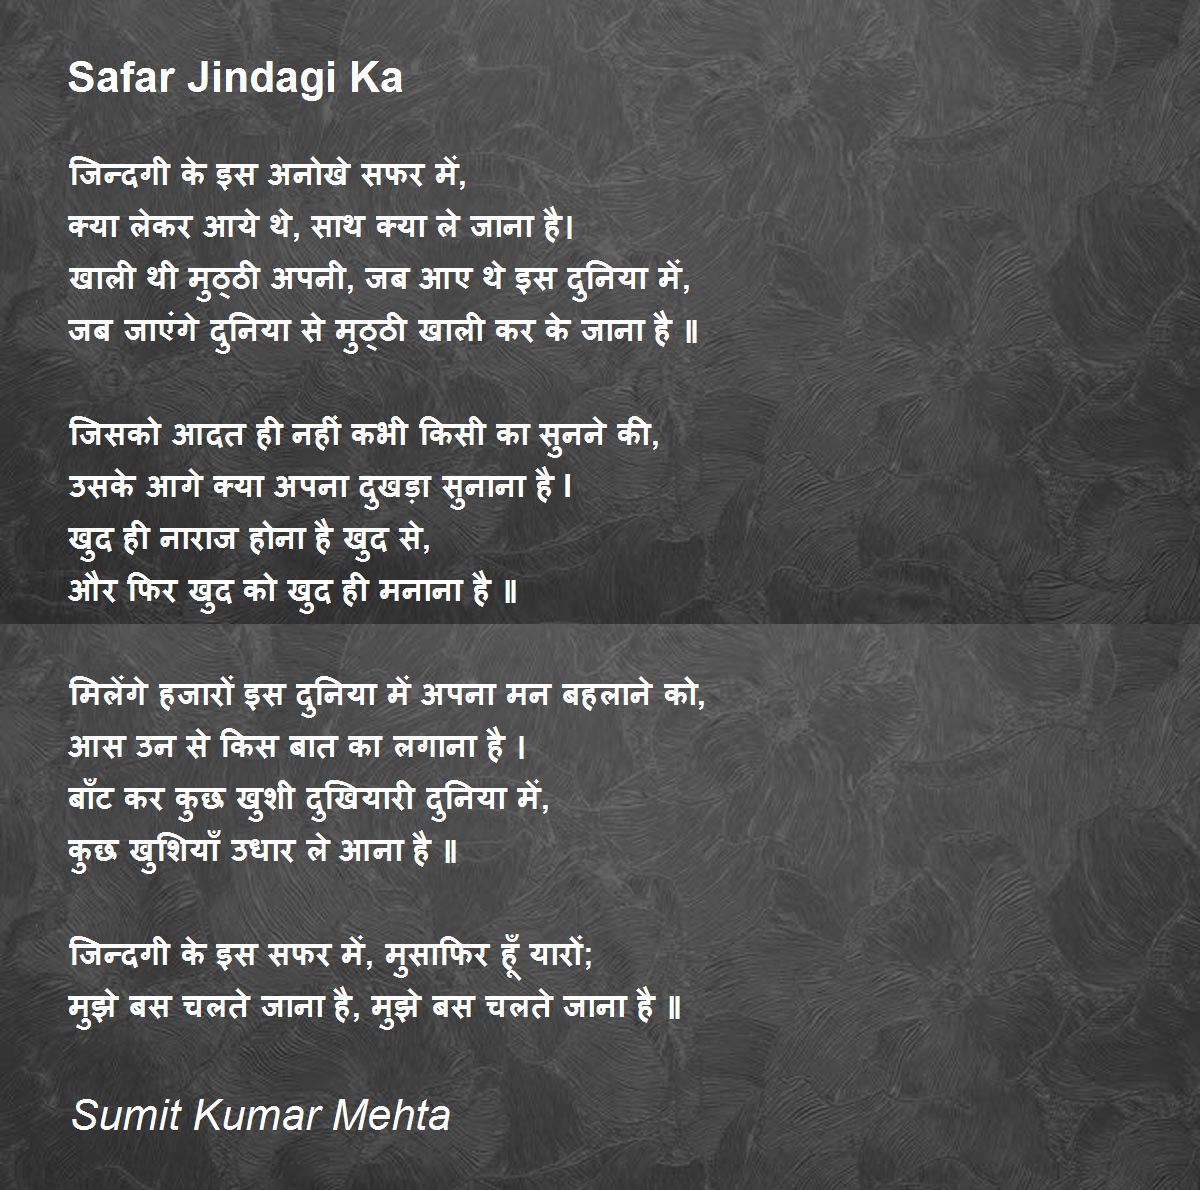 Safar Jindagi Ka - Safar Jindagi Ka Poem by Sumit Kumar Mehta